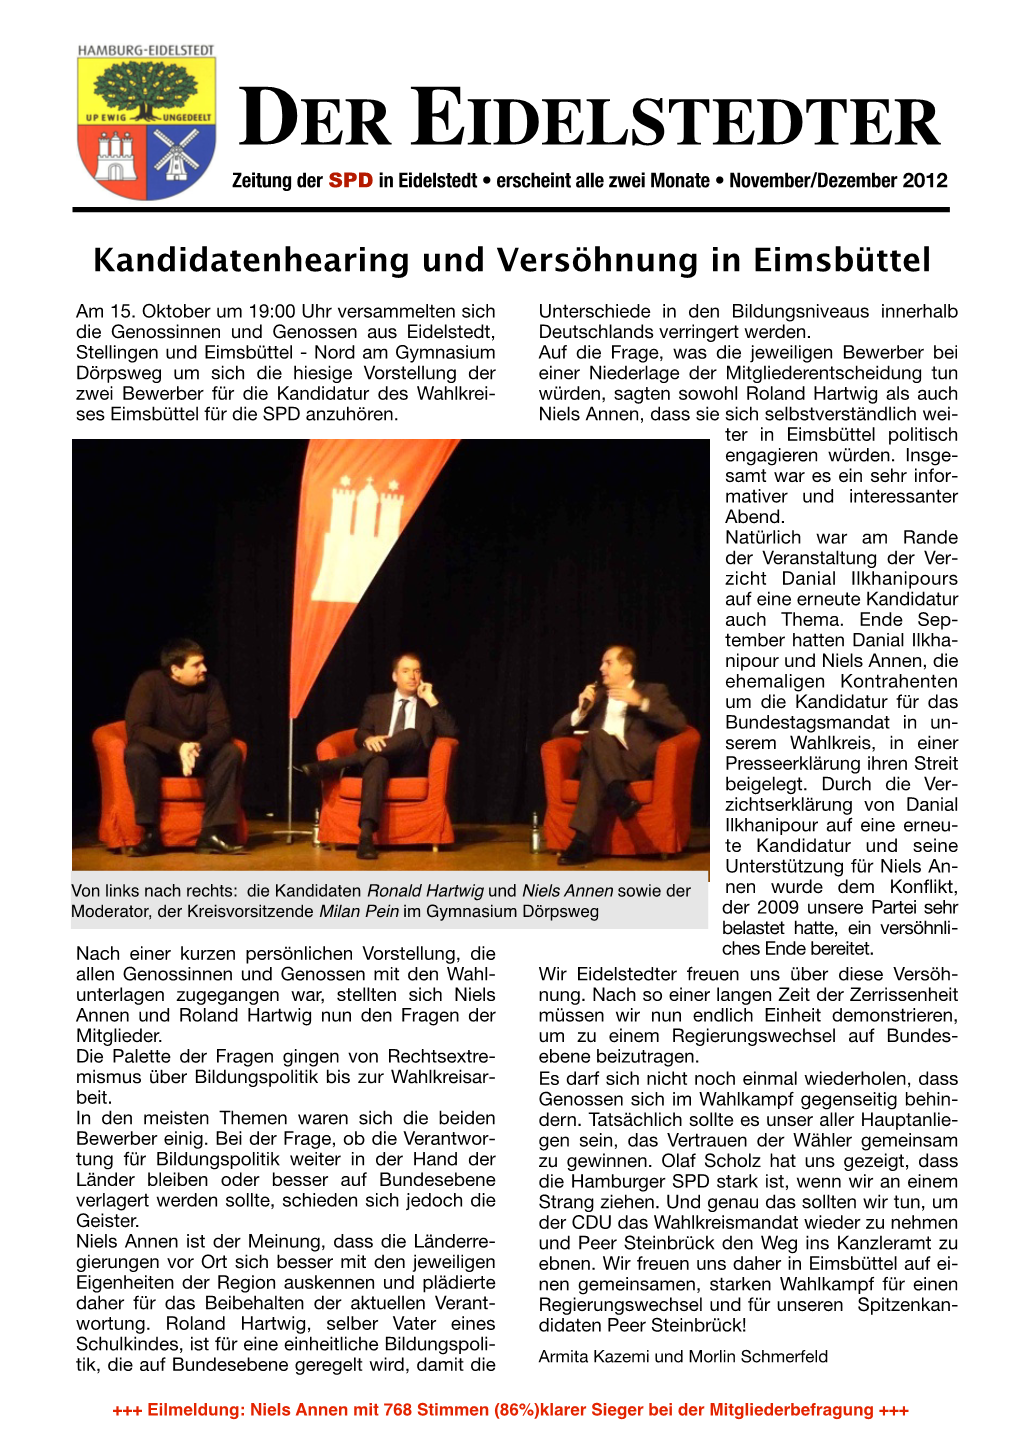 Der Eidelstedter Ausgabe 04/2012 (Pdf)